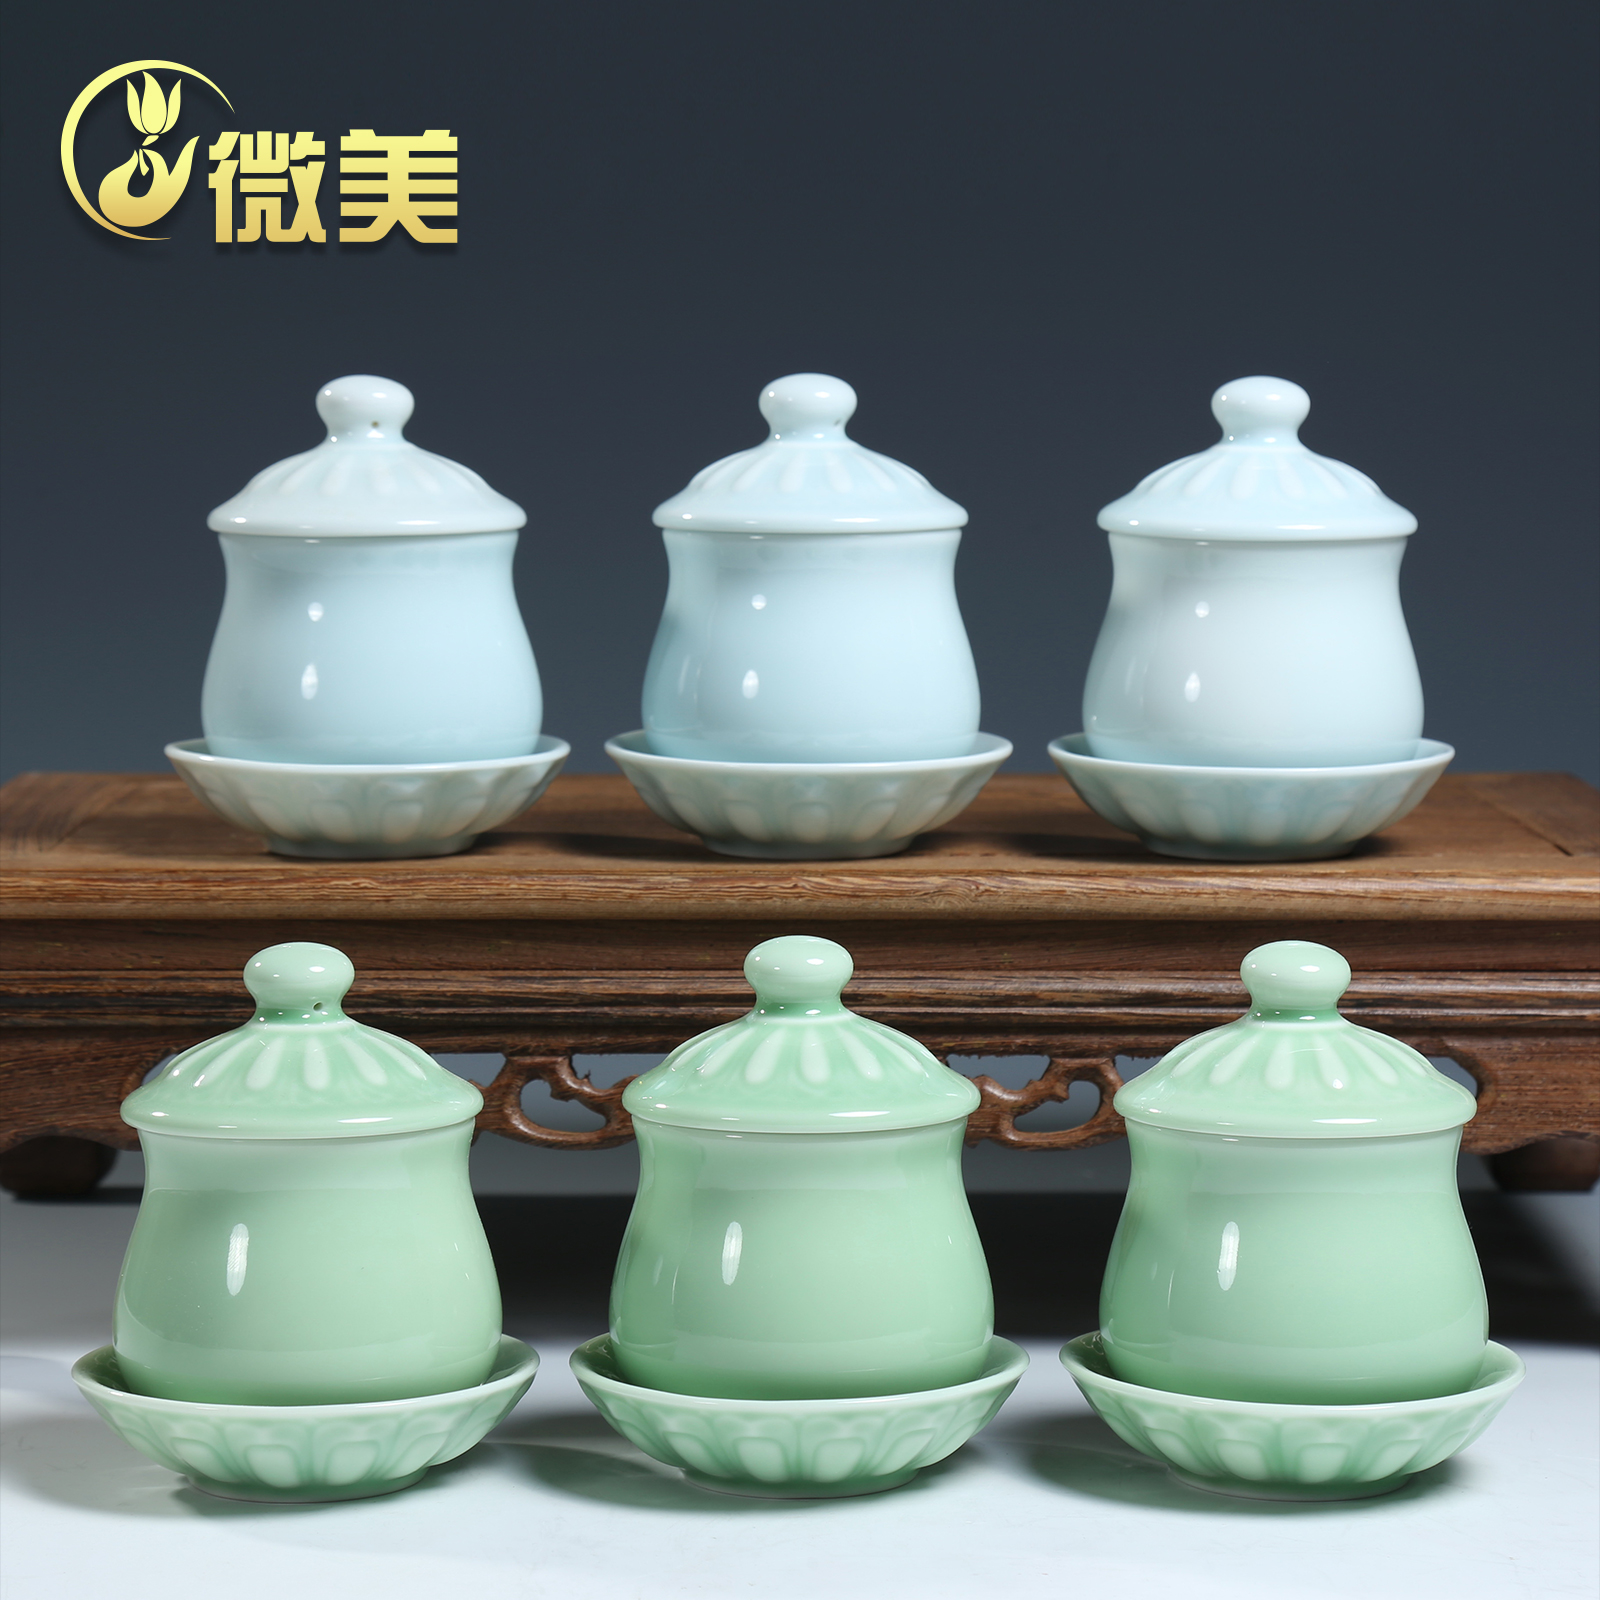 簡約風格陶瓷用具禮佛淨水杯系列適用於佛堂擺放